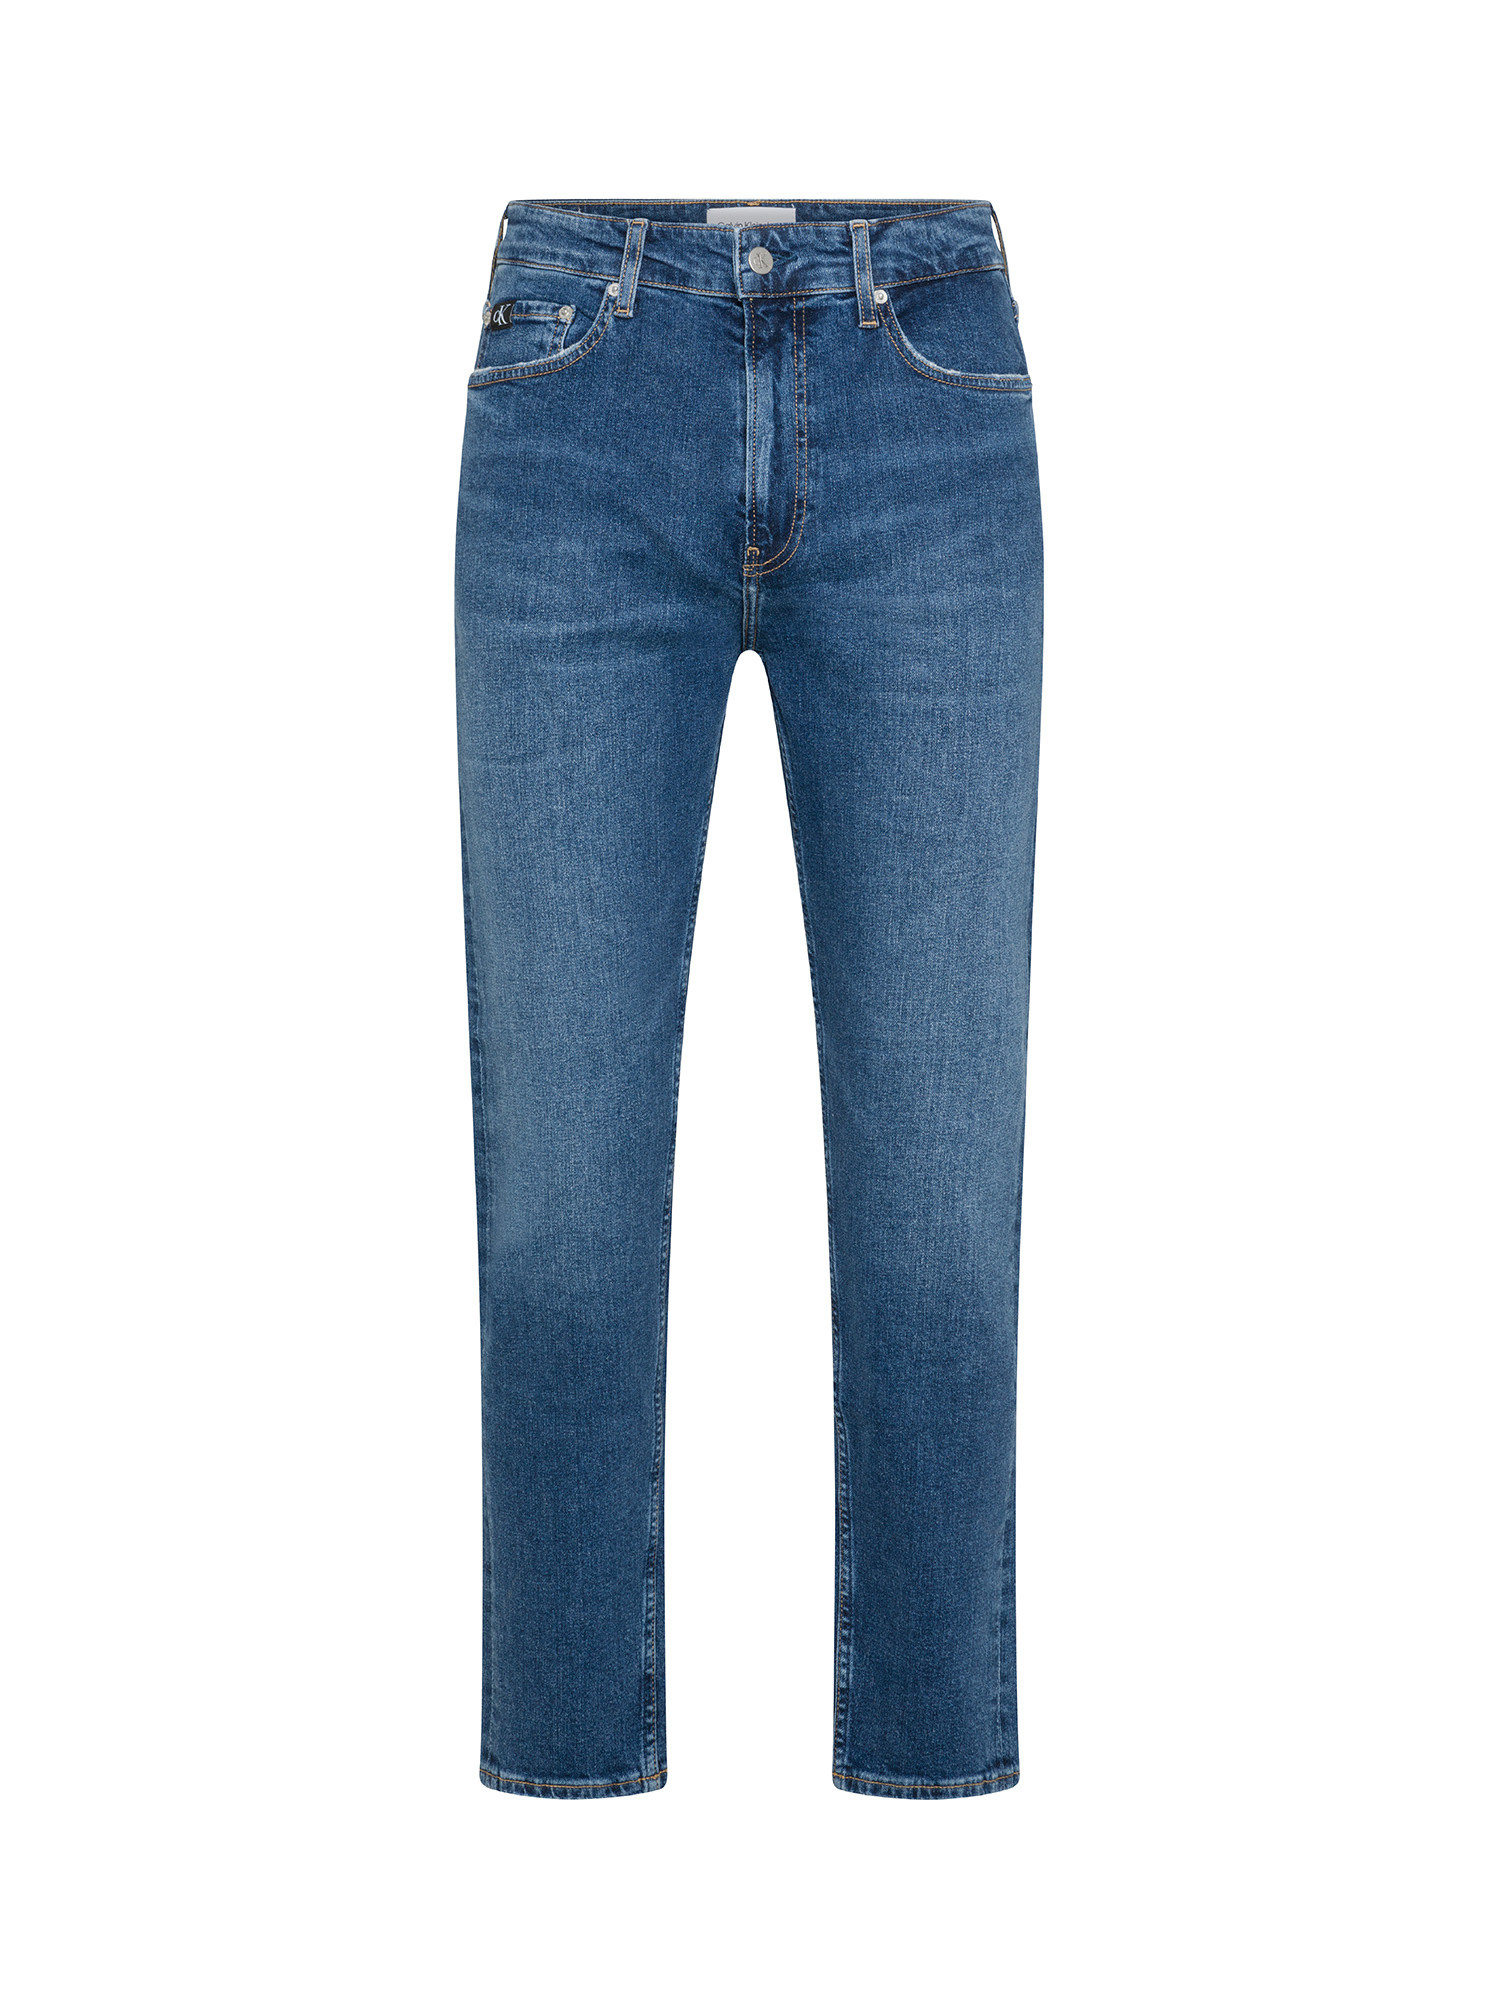 Jeans 5 tasche, Denim, large image number 0